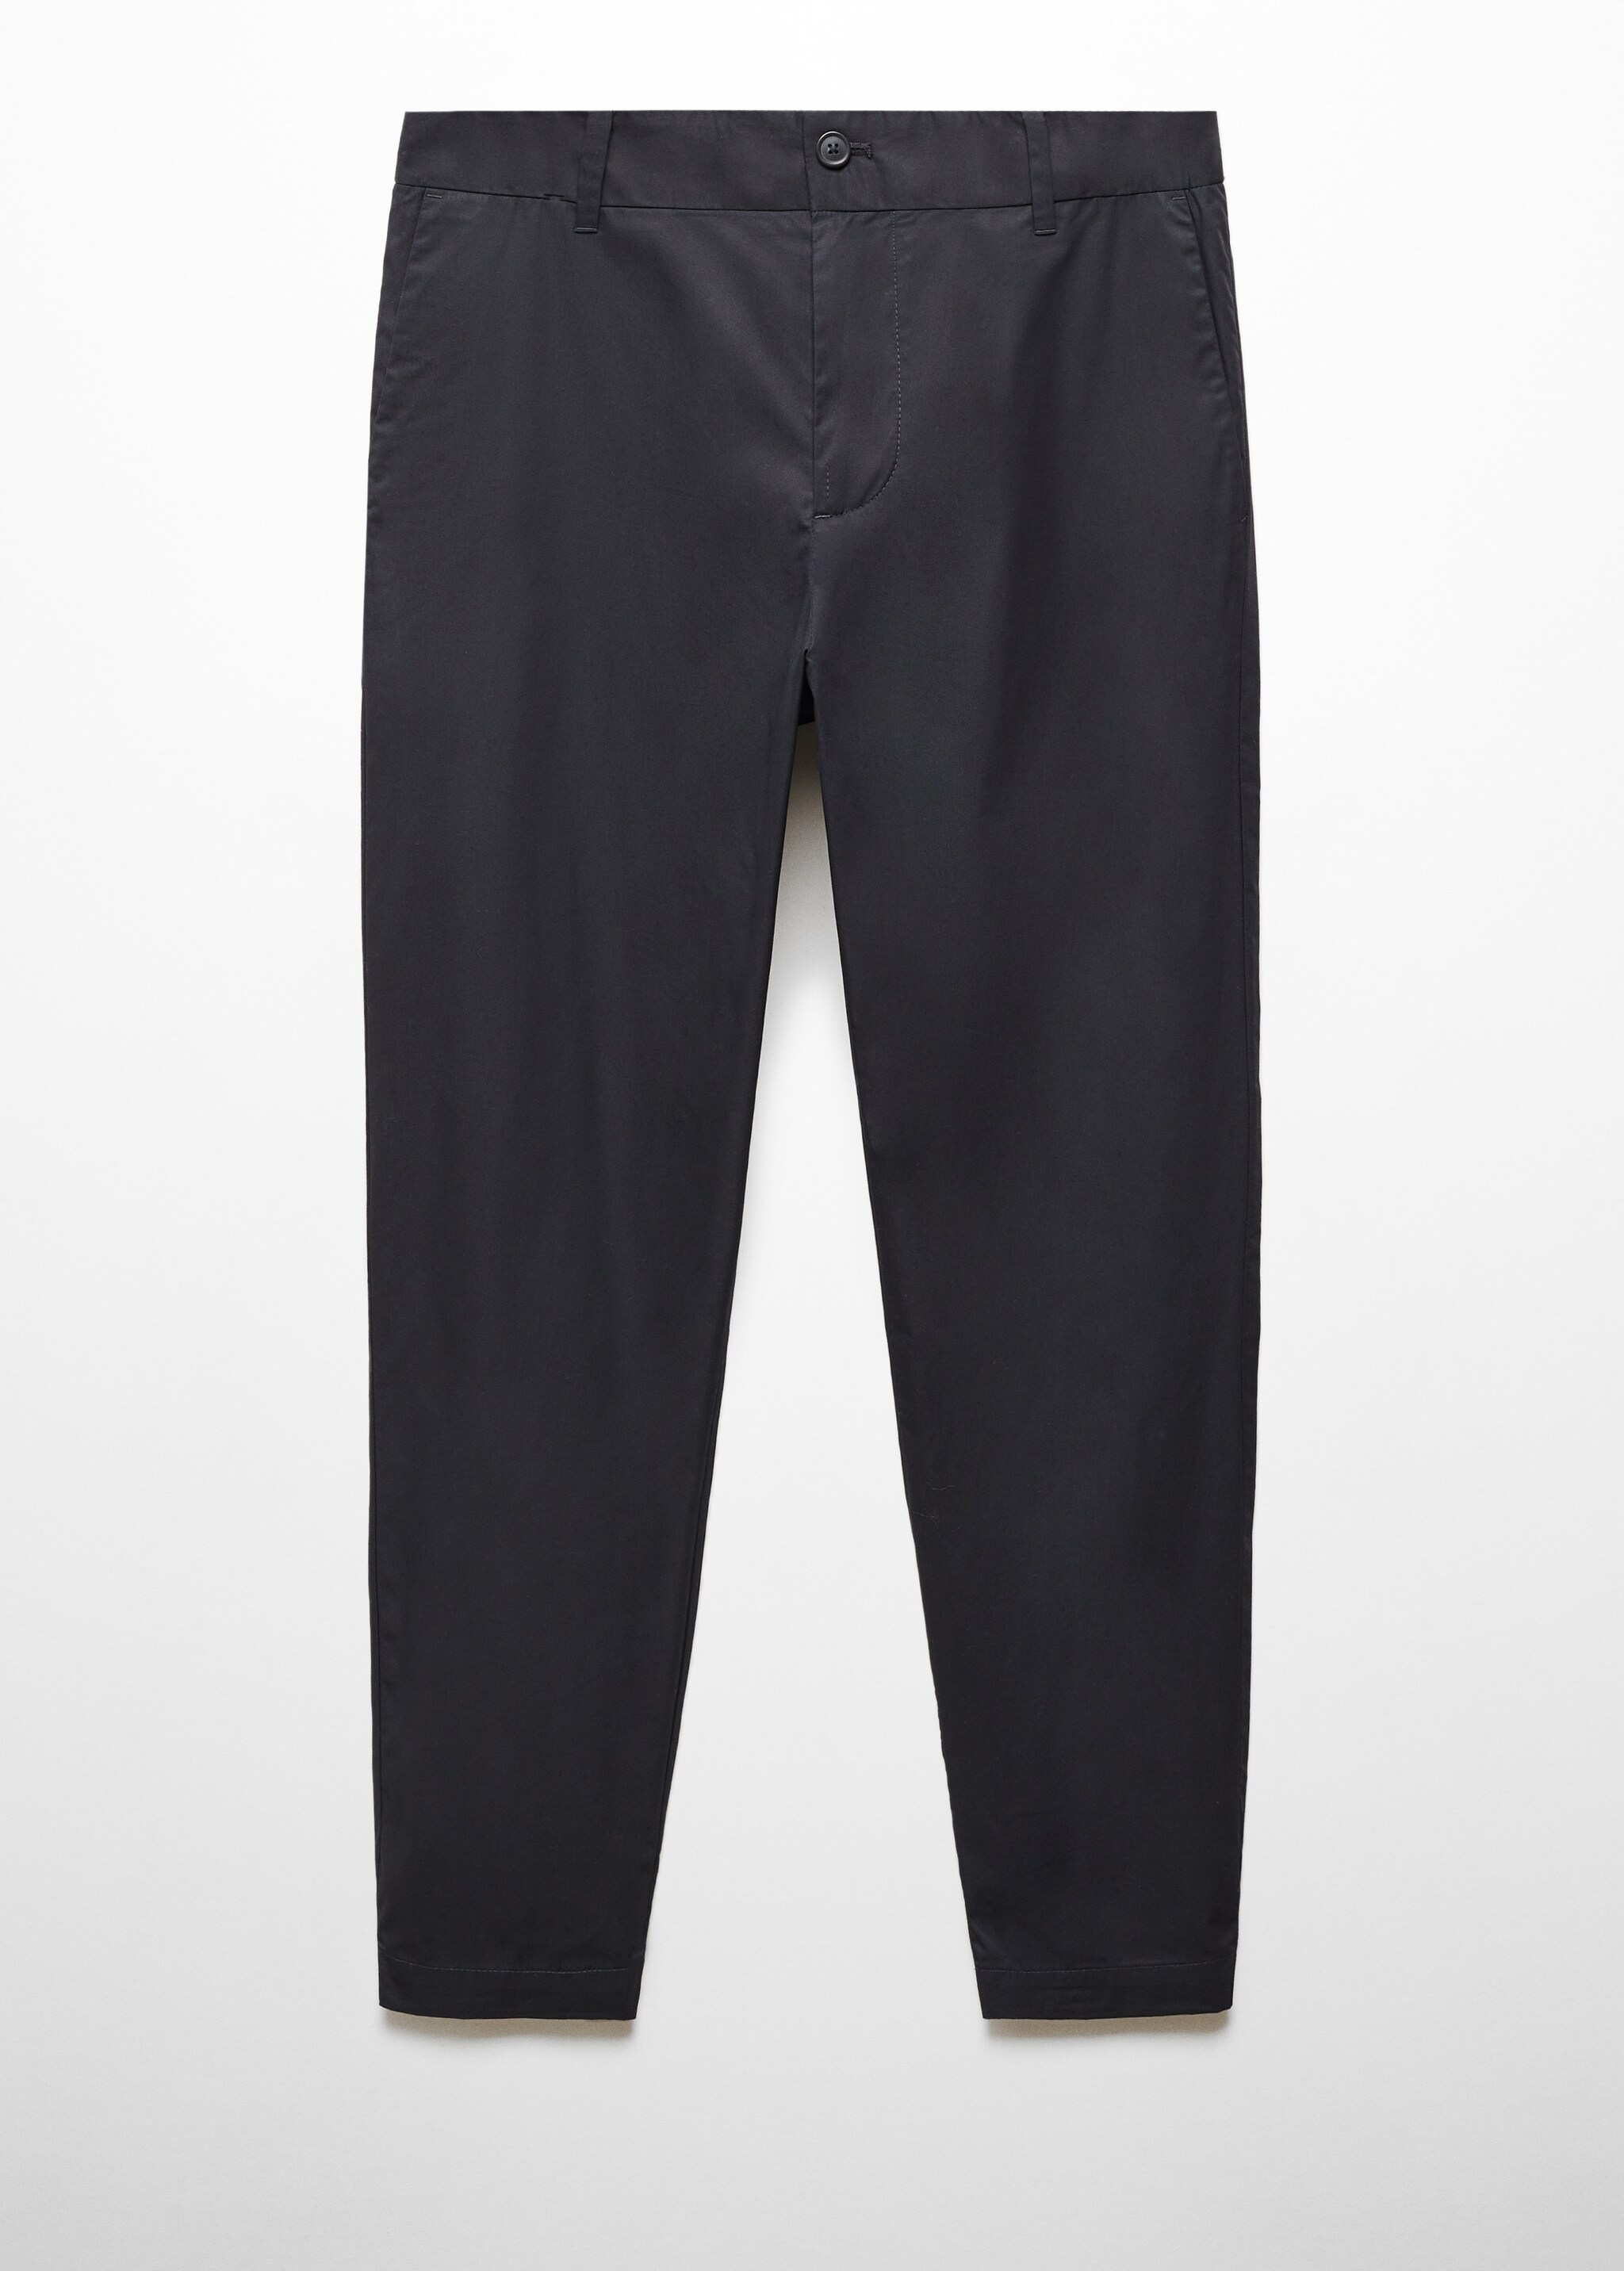 Pantalón slim fit 100% algodón - Artículo sin modelo